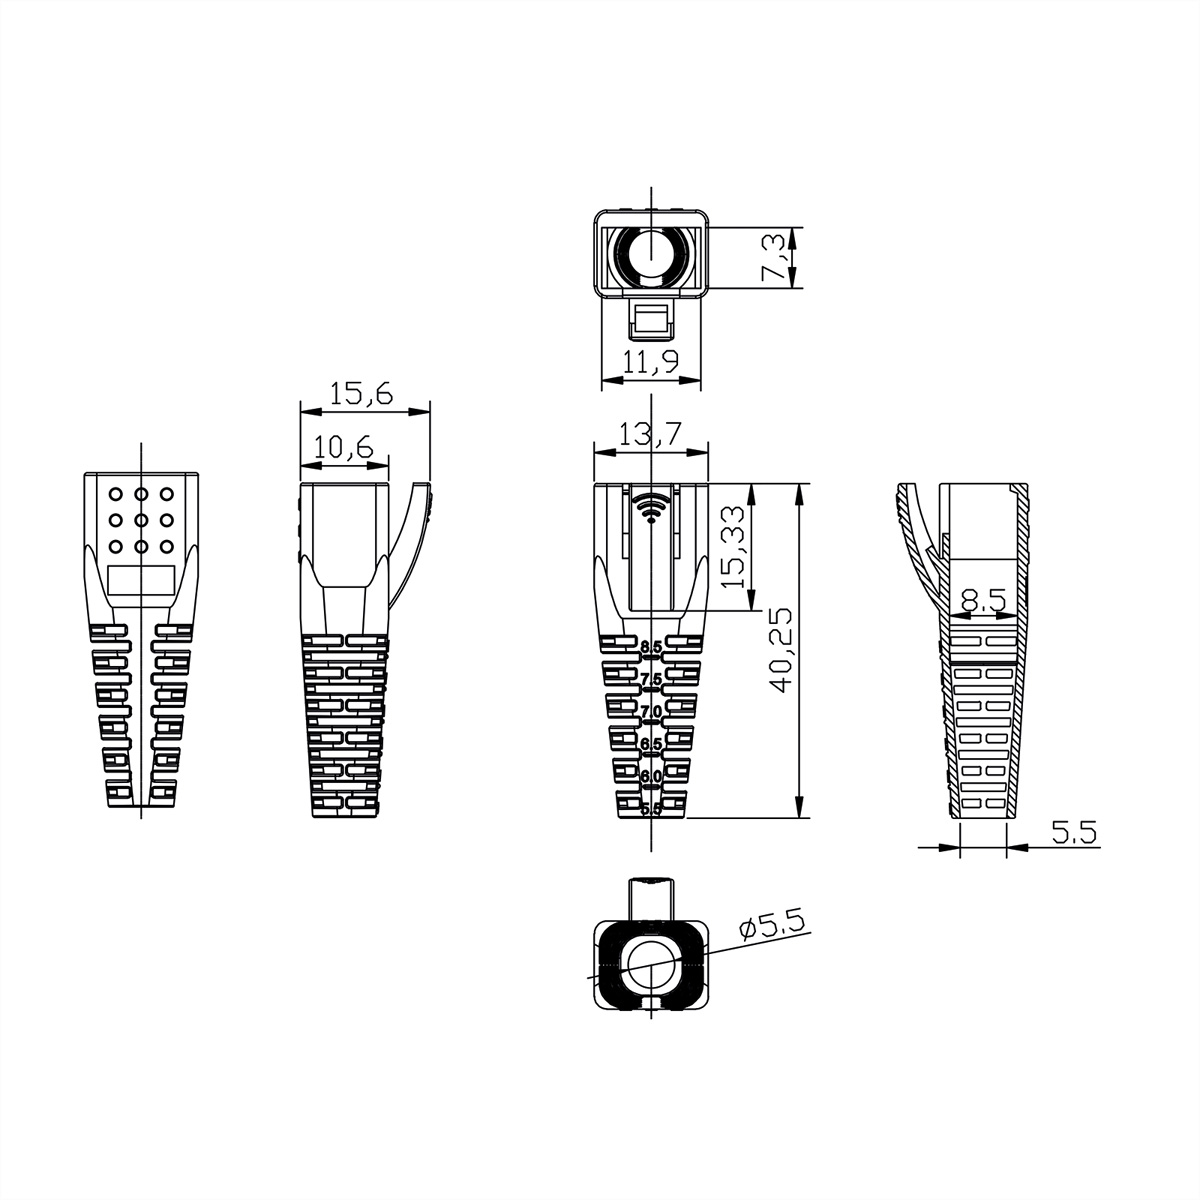 ROLINE Knickschutztülle für RJ-45 Tüllen für RJ-45 Plugs Modular